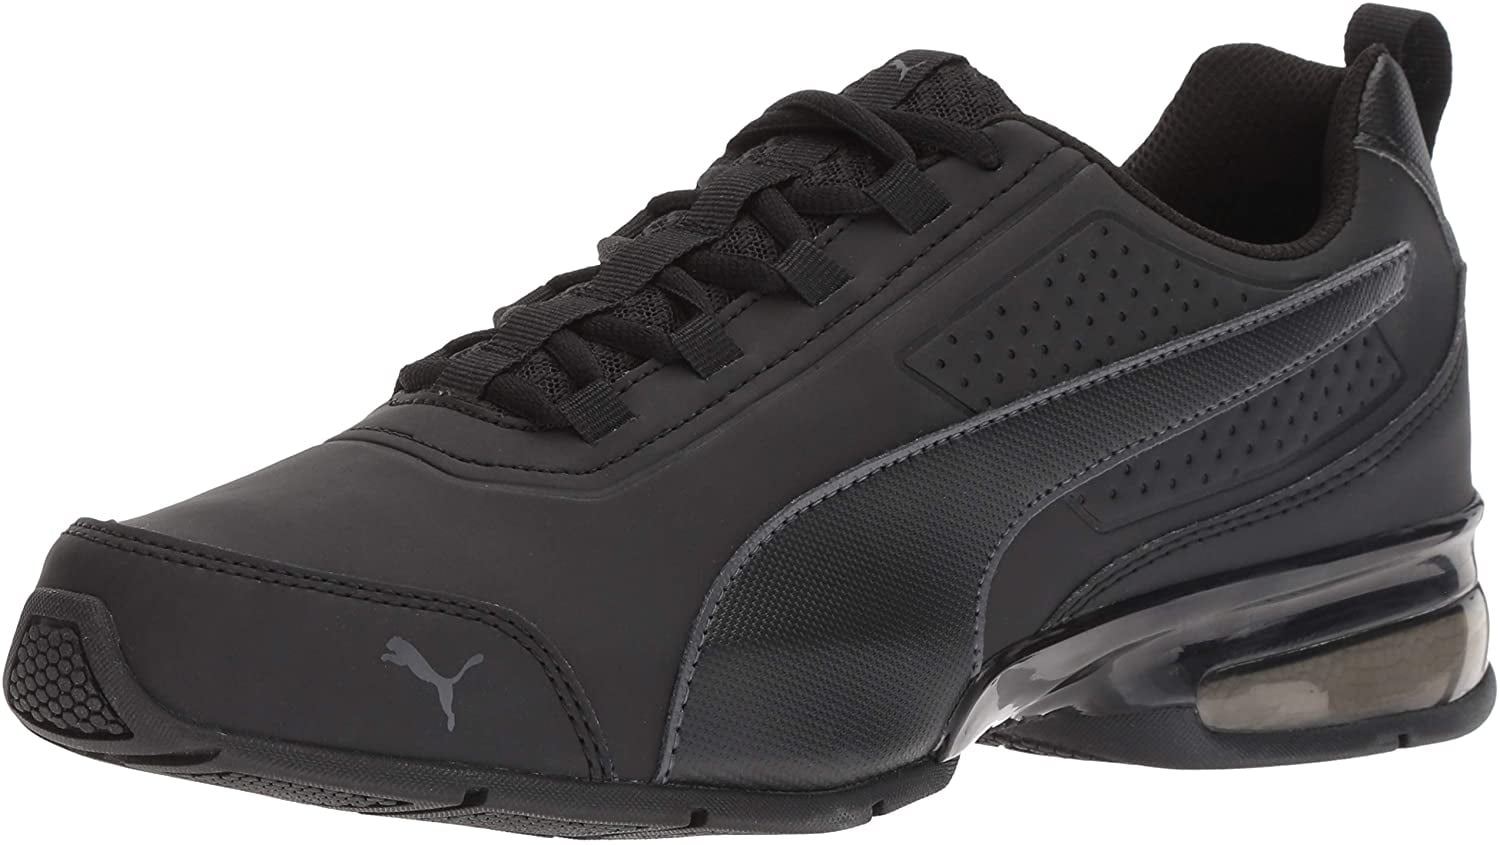 VT Buck Sneaker, Black-Asphalt, 8 